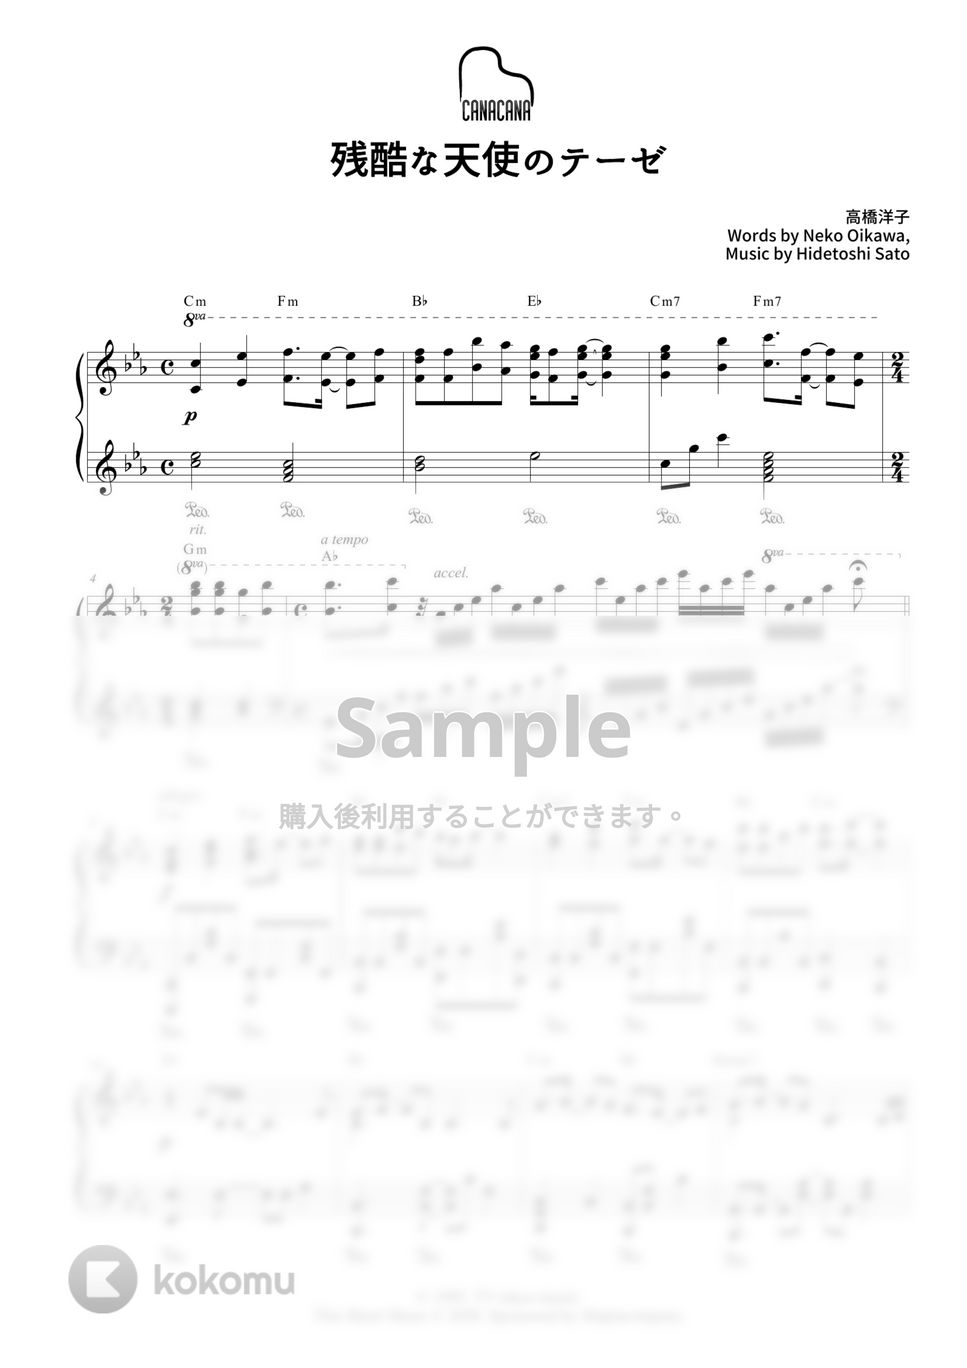 高橋洋子 - 残酷な天使のテーゼ (『新世紀エヴァンゲリオン』主題歌) by CANACANA family